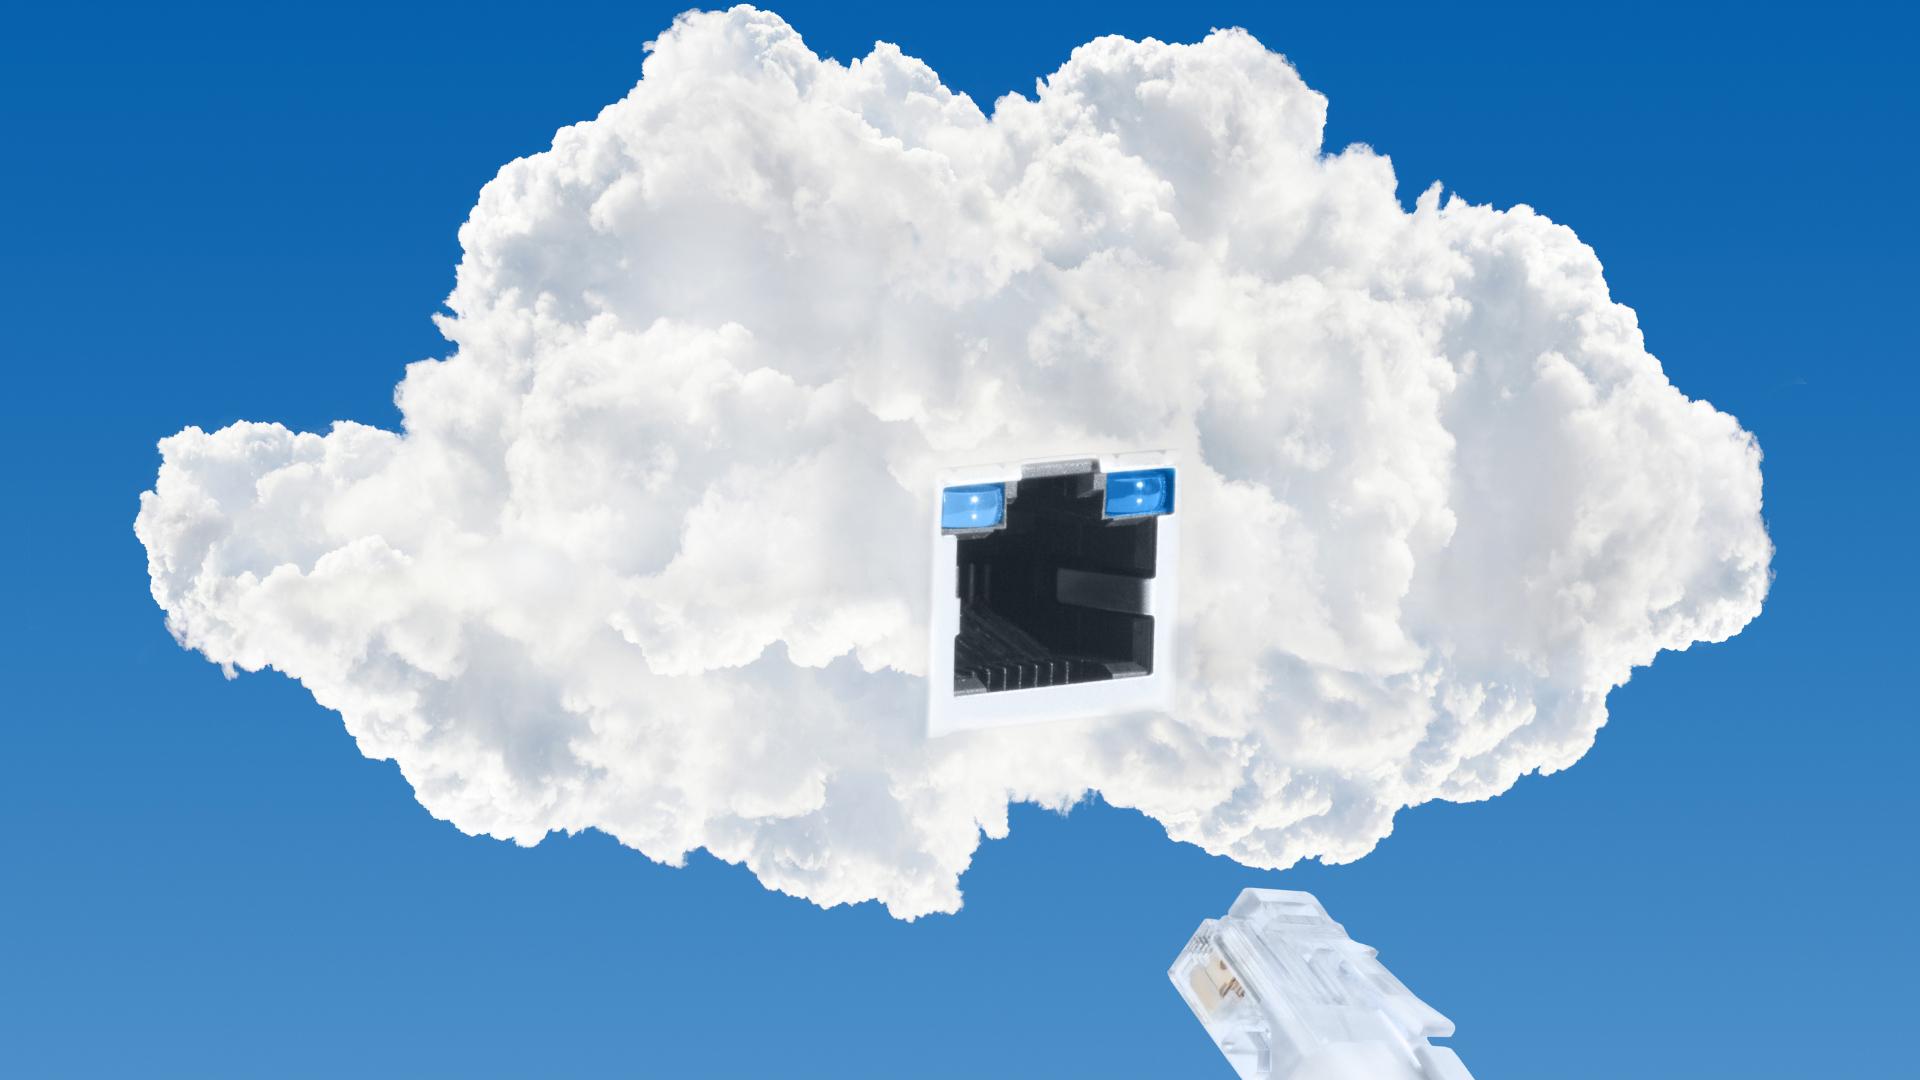 cloud avec prise Ethernet pour symboliser les logiciels basés sur le cloud